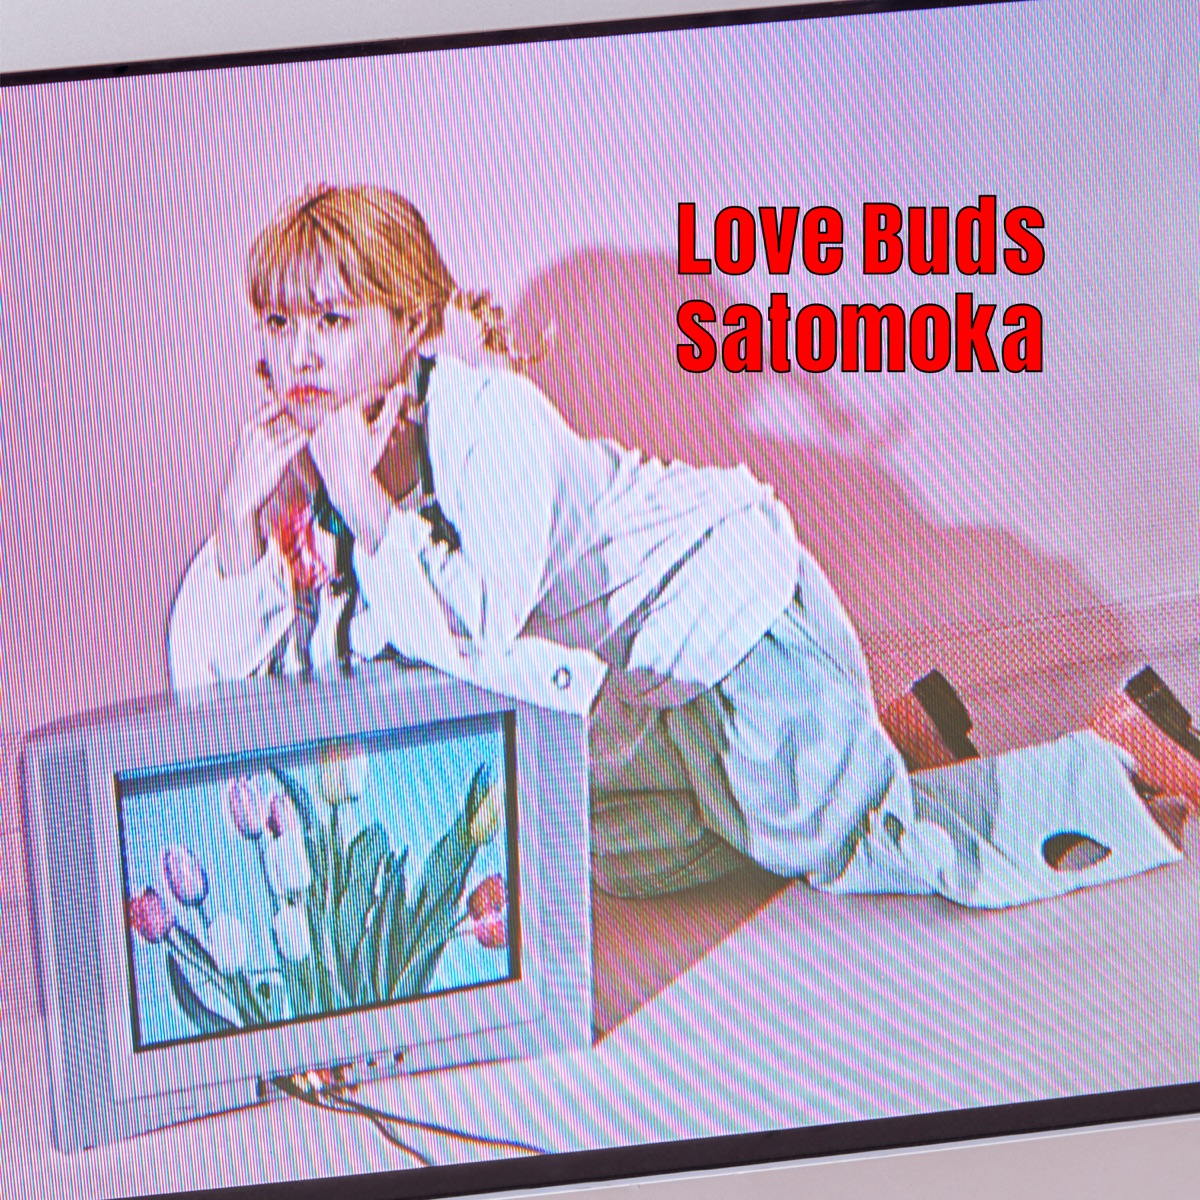 『さとうもか - Love Buds』収録の『Love Buds』ジャケット